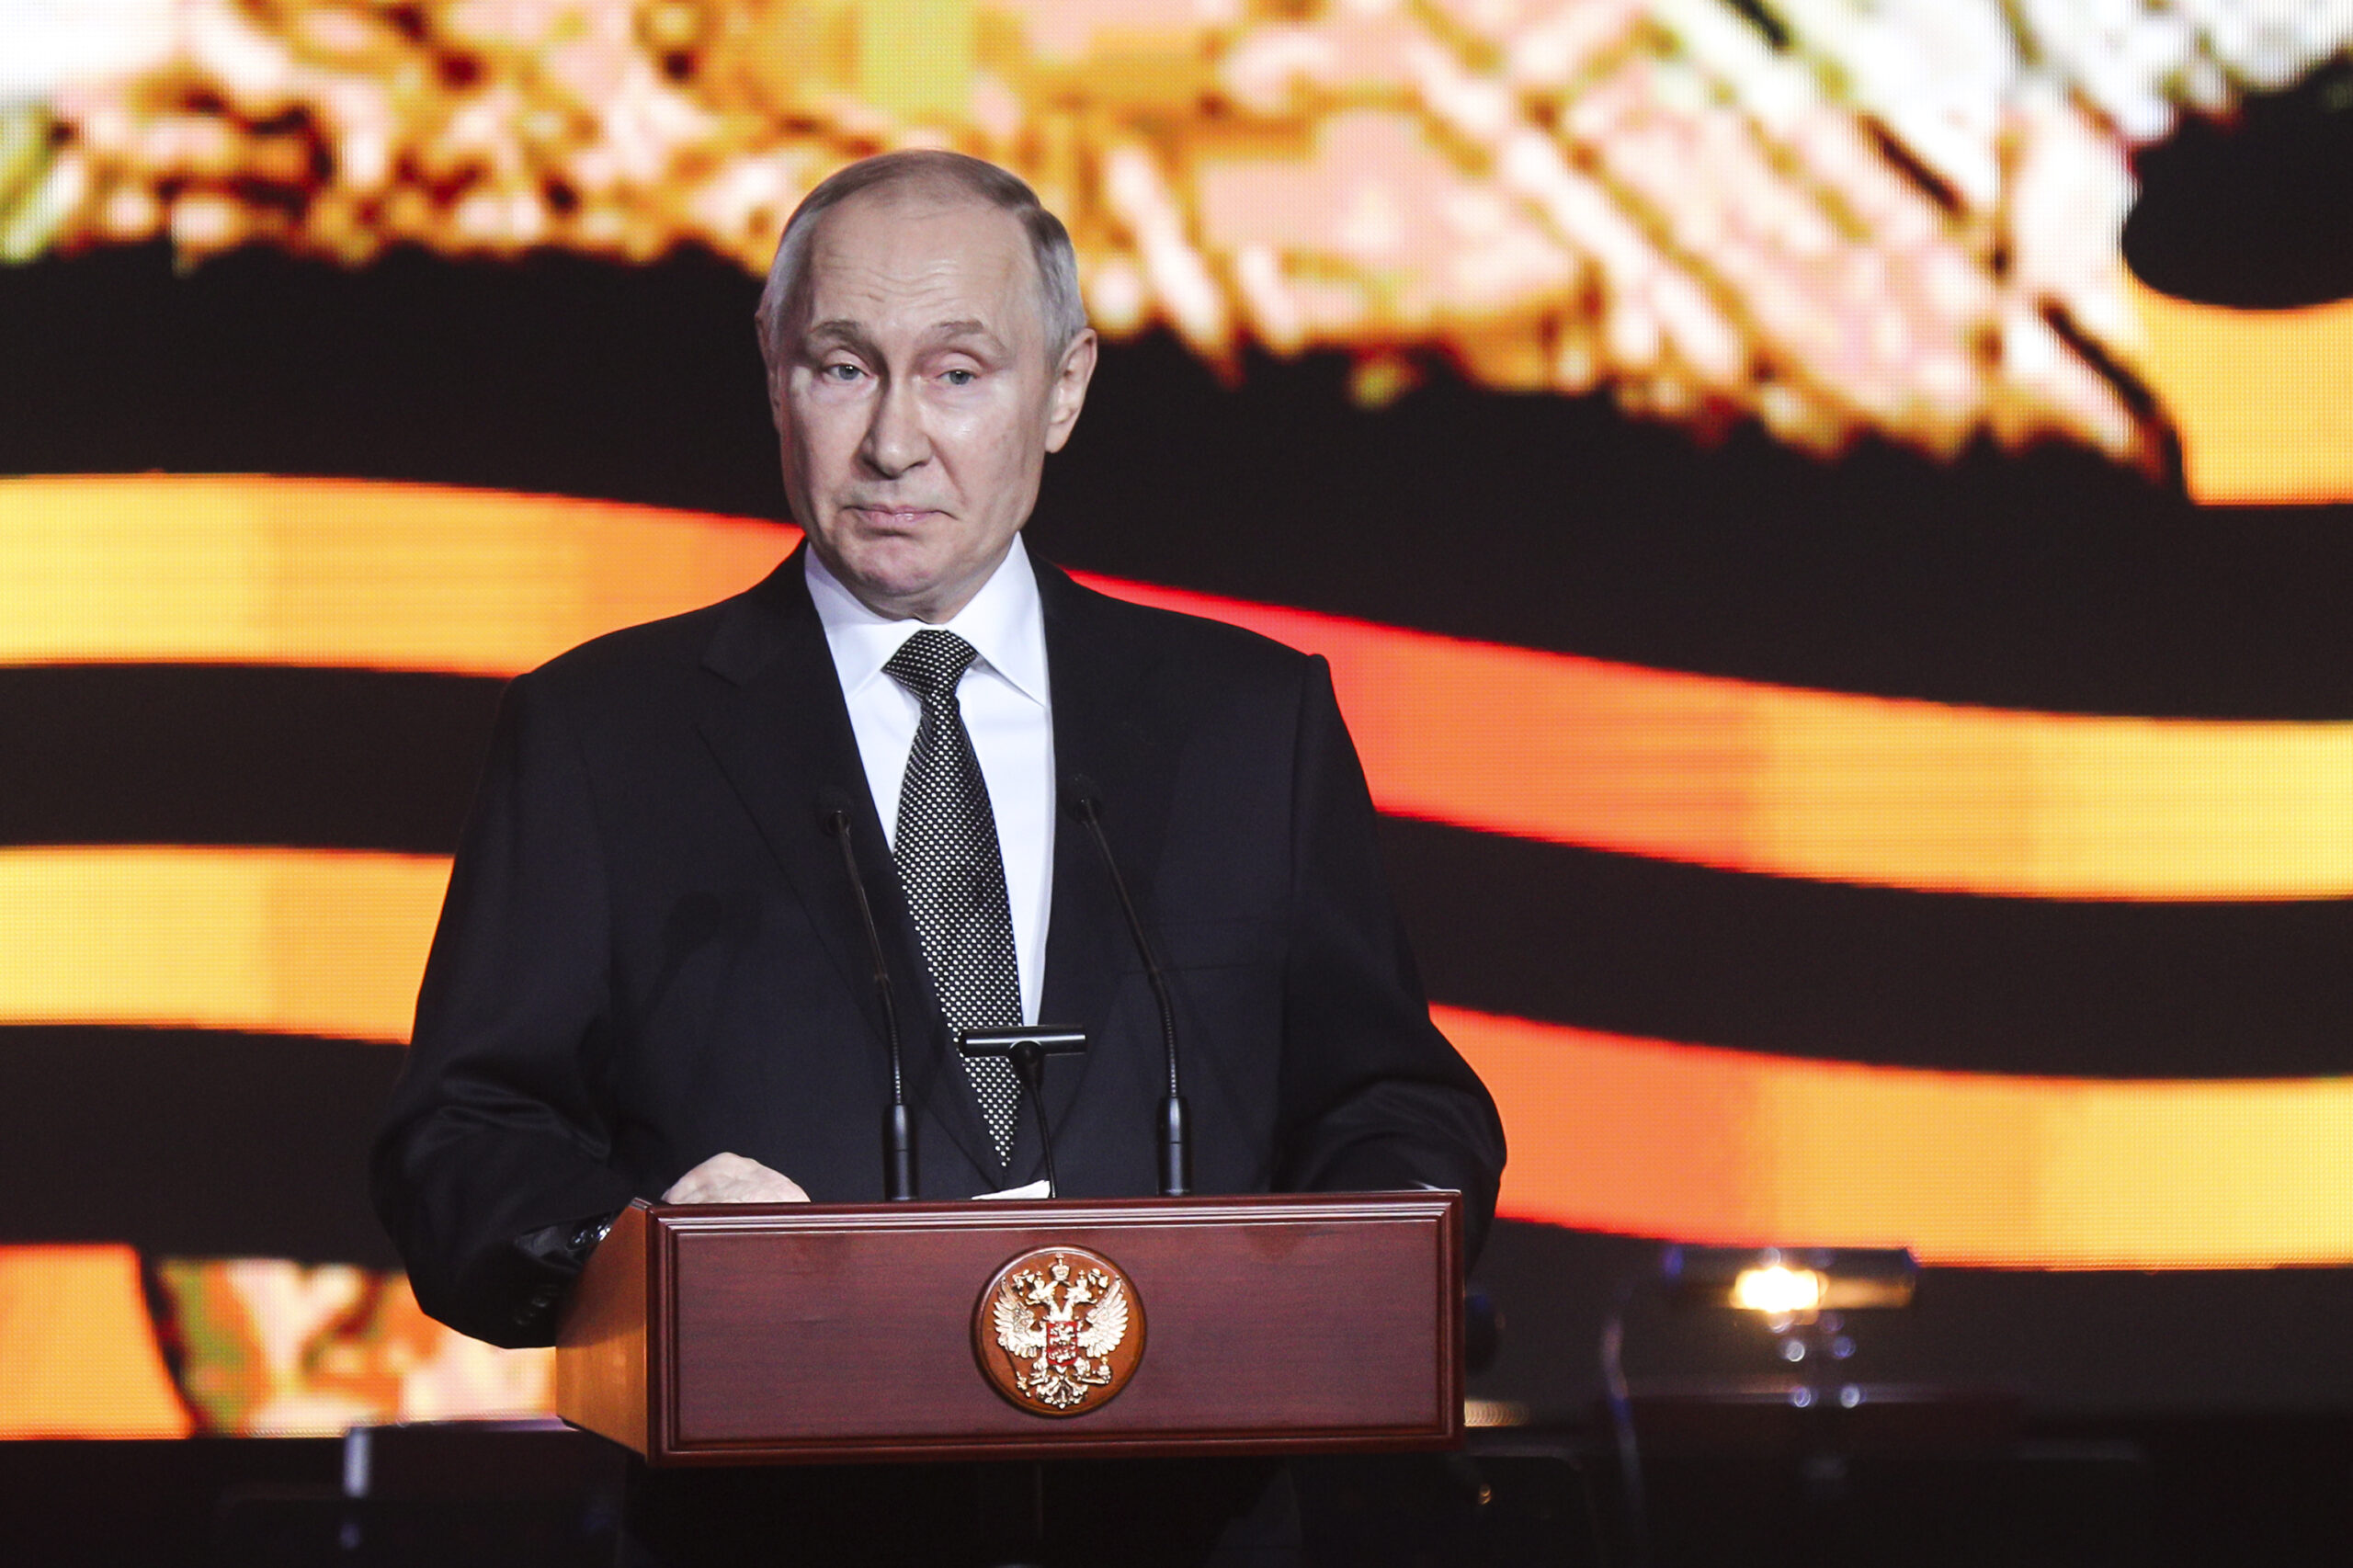 Wladimir Putin, Präsident von Russland, hält eine Rede während einer Gedenkfeier anlässlich des 80. Jahrestages des sowjetischen Sieges in der Schlacht von Stalingrad.